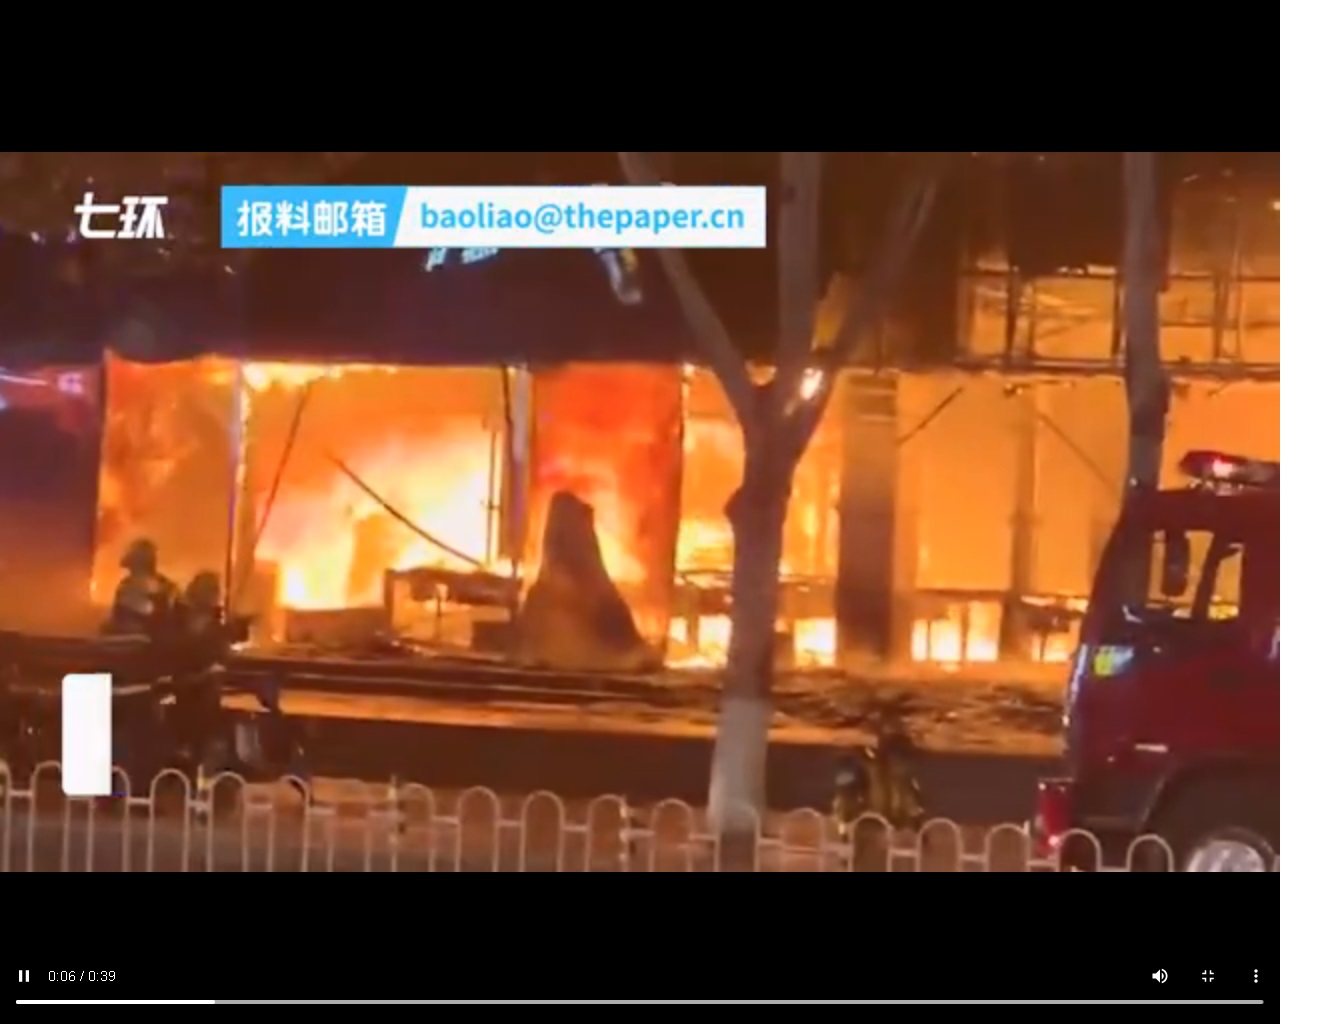 内蒙古鄂尔多斯商场内华为手机店起火 两人死亡 